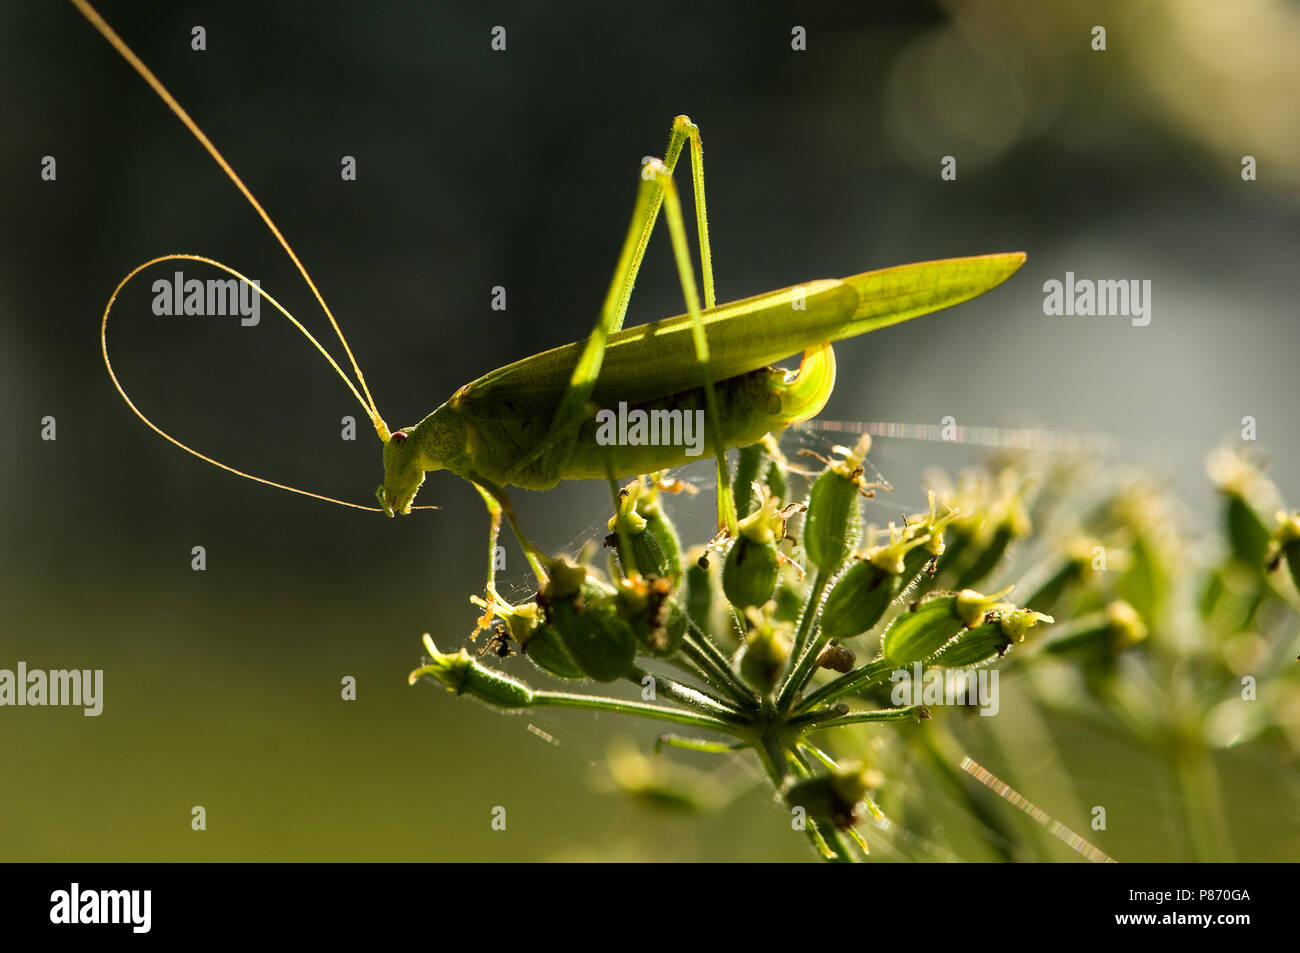 Sickle-bearing Bush-cricket on flower Netherlands, Sikkelsprinkhaan op bloem Nederland Stock Photo